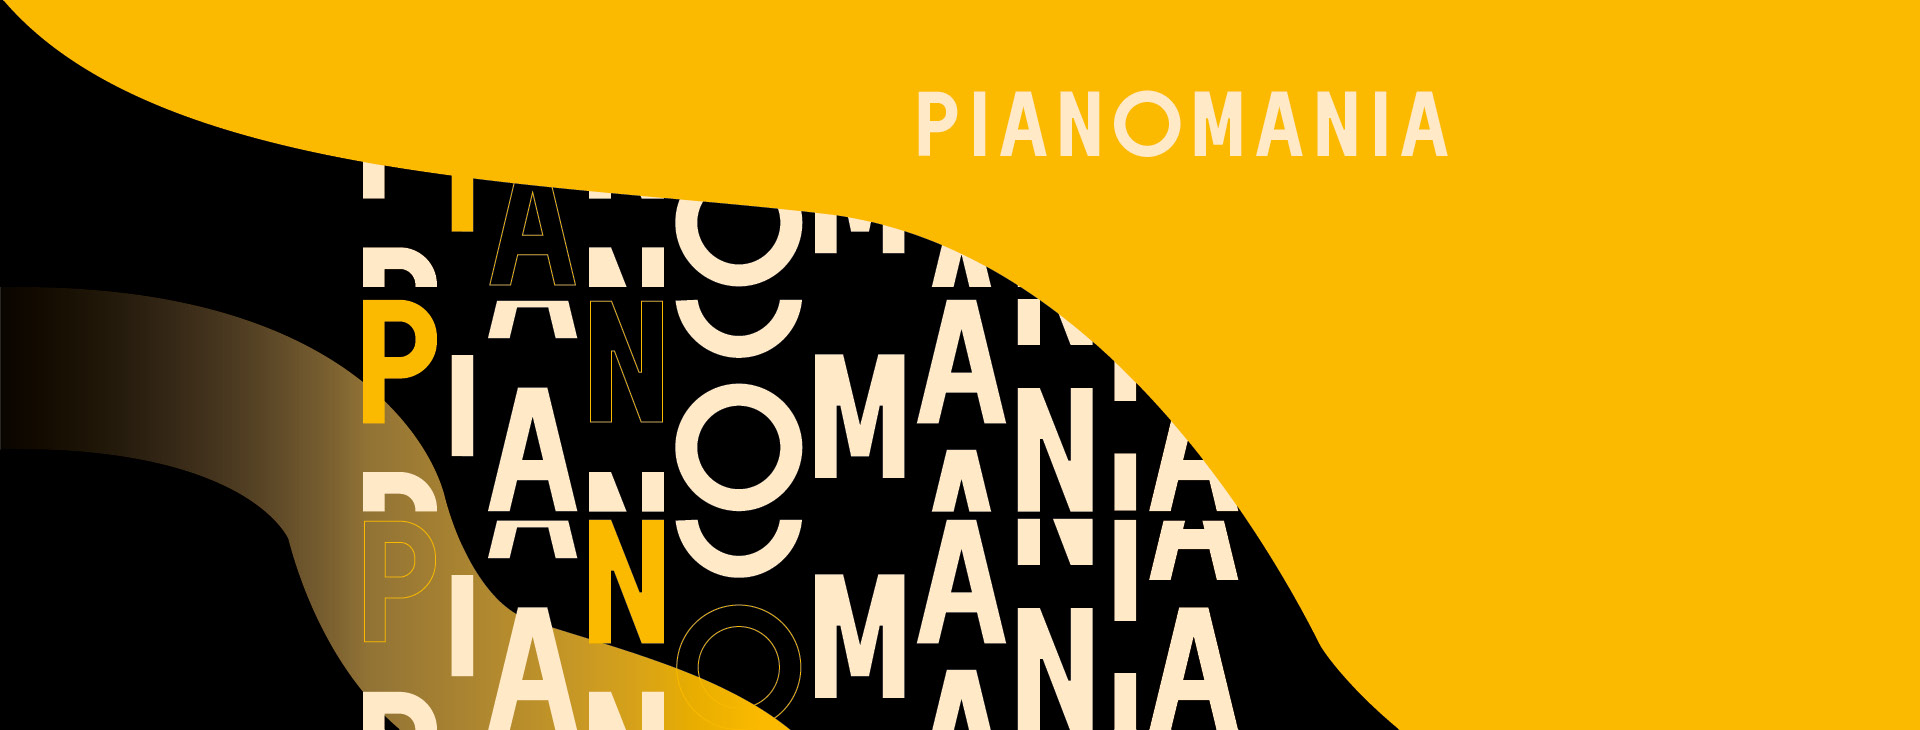 Pianomania-festival-paris-concert